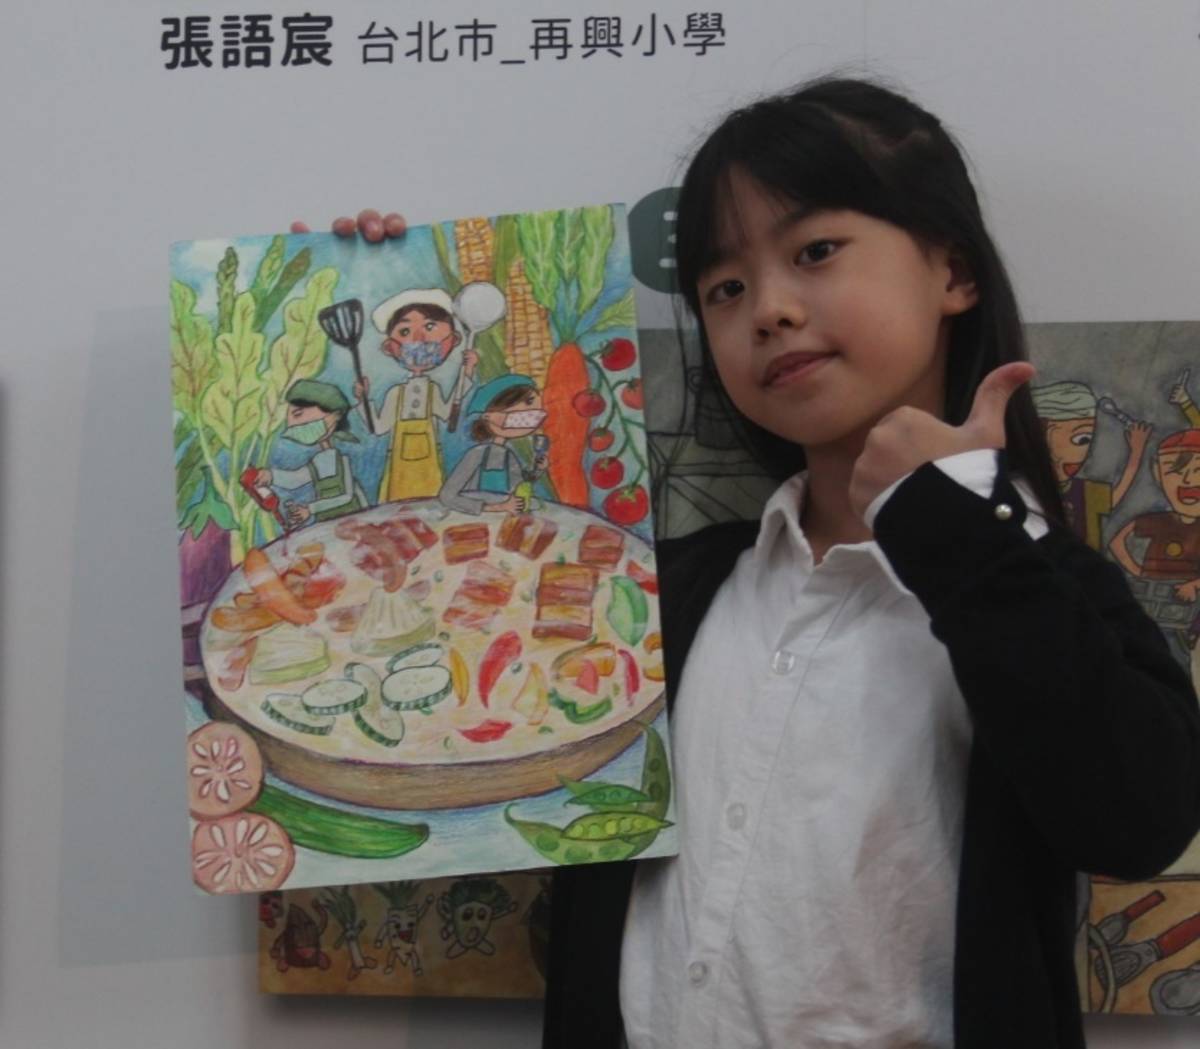 張語宸把自己喜歡的菜色都放入畫中，插畫風格得到評審讚賞